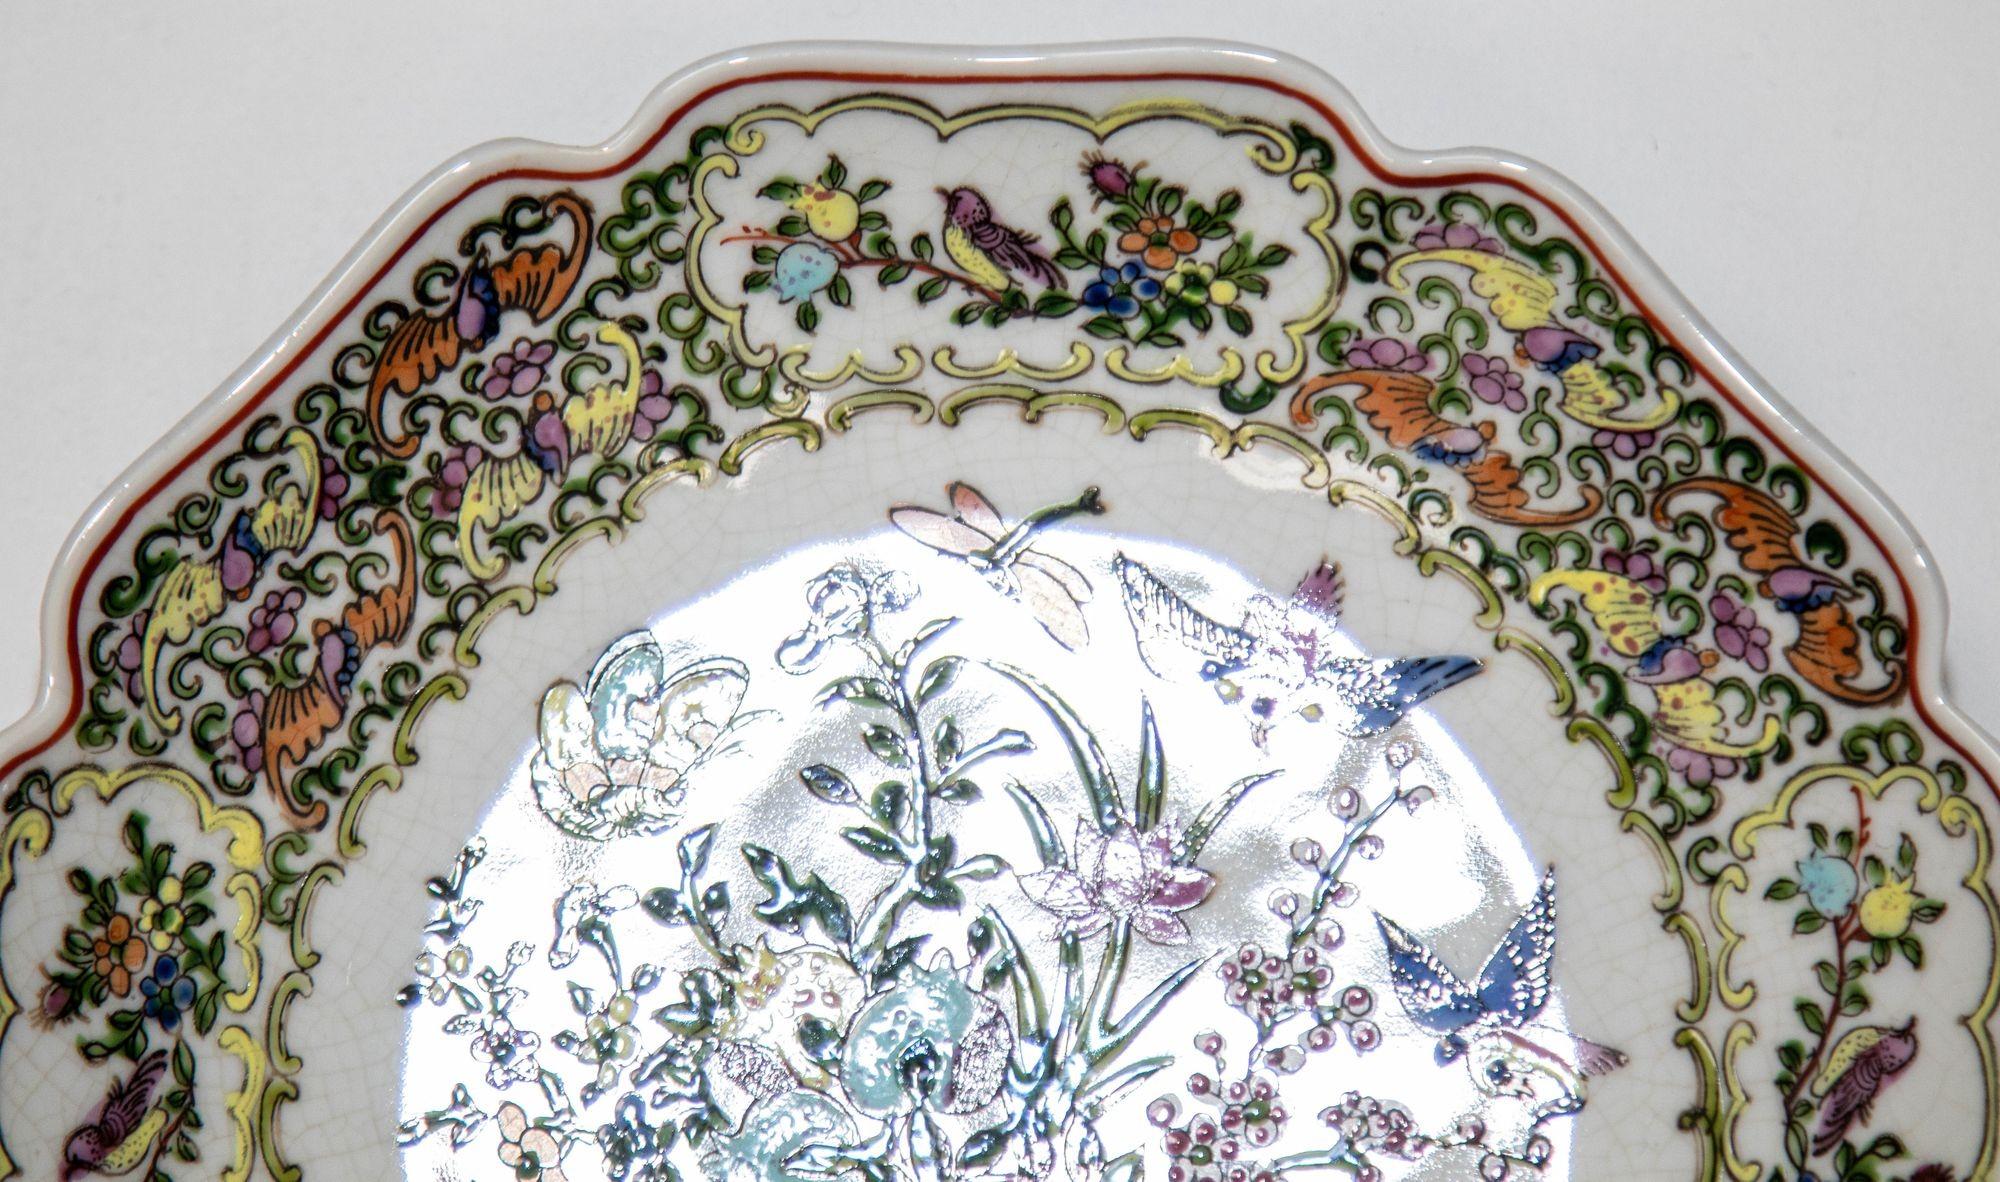 Vintage famille Rose Porzellanteller mit Vögeln und Blumen handgemalt Dekorationen.
Antike famille Rose Medaillon chinesischen Export Porzellan von Hong Horizons.
Mit sehr detaillierten, mehrfarbigen Paneelen, die verschiedene Szenen darstellen.